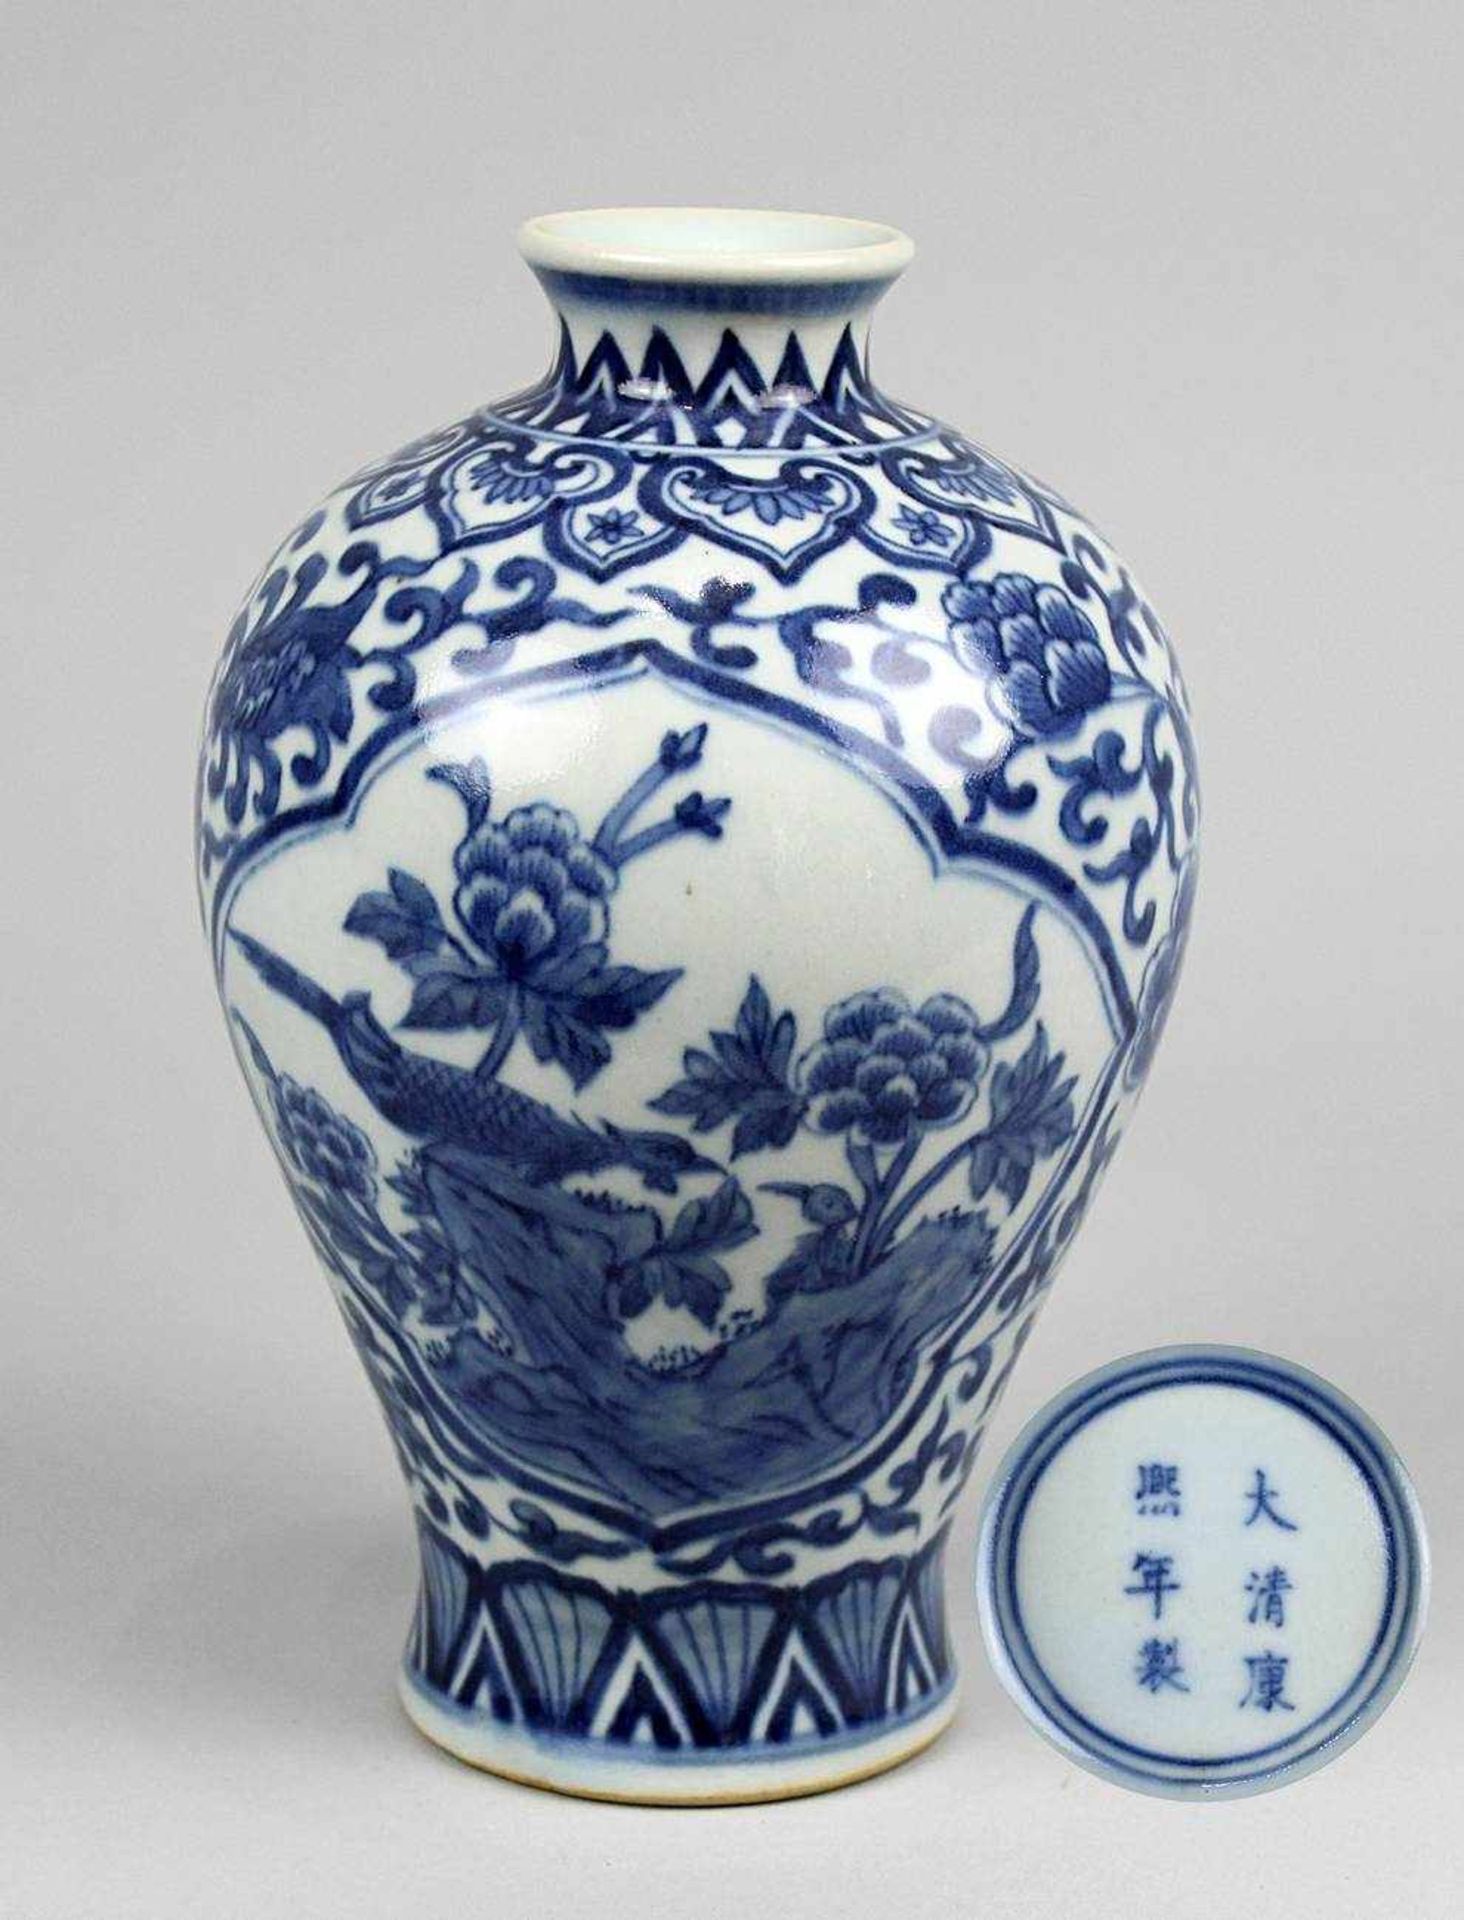 Chin. Meiping-Vase um 1900. Porzellan, hellblau glasiert, blau gemalter Blütenrankendekor mit